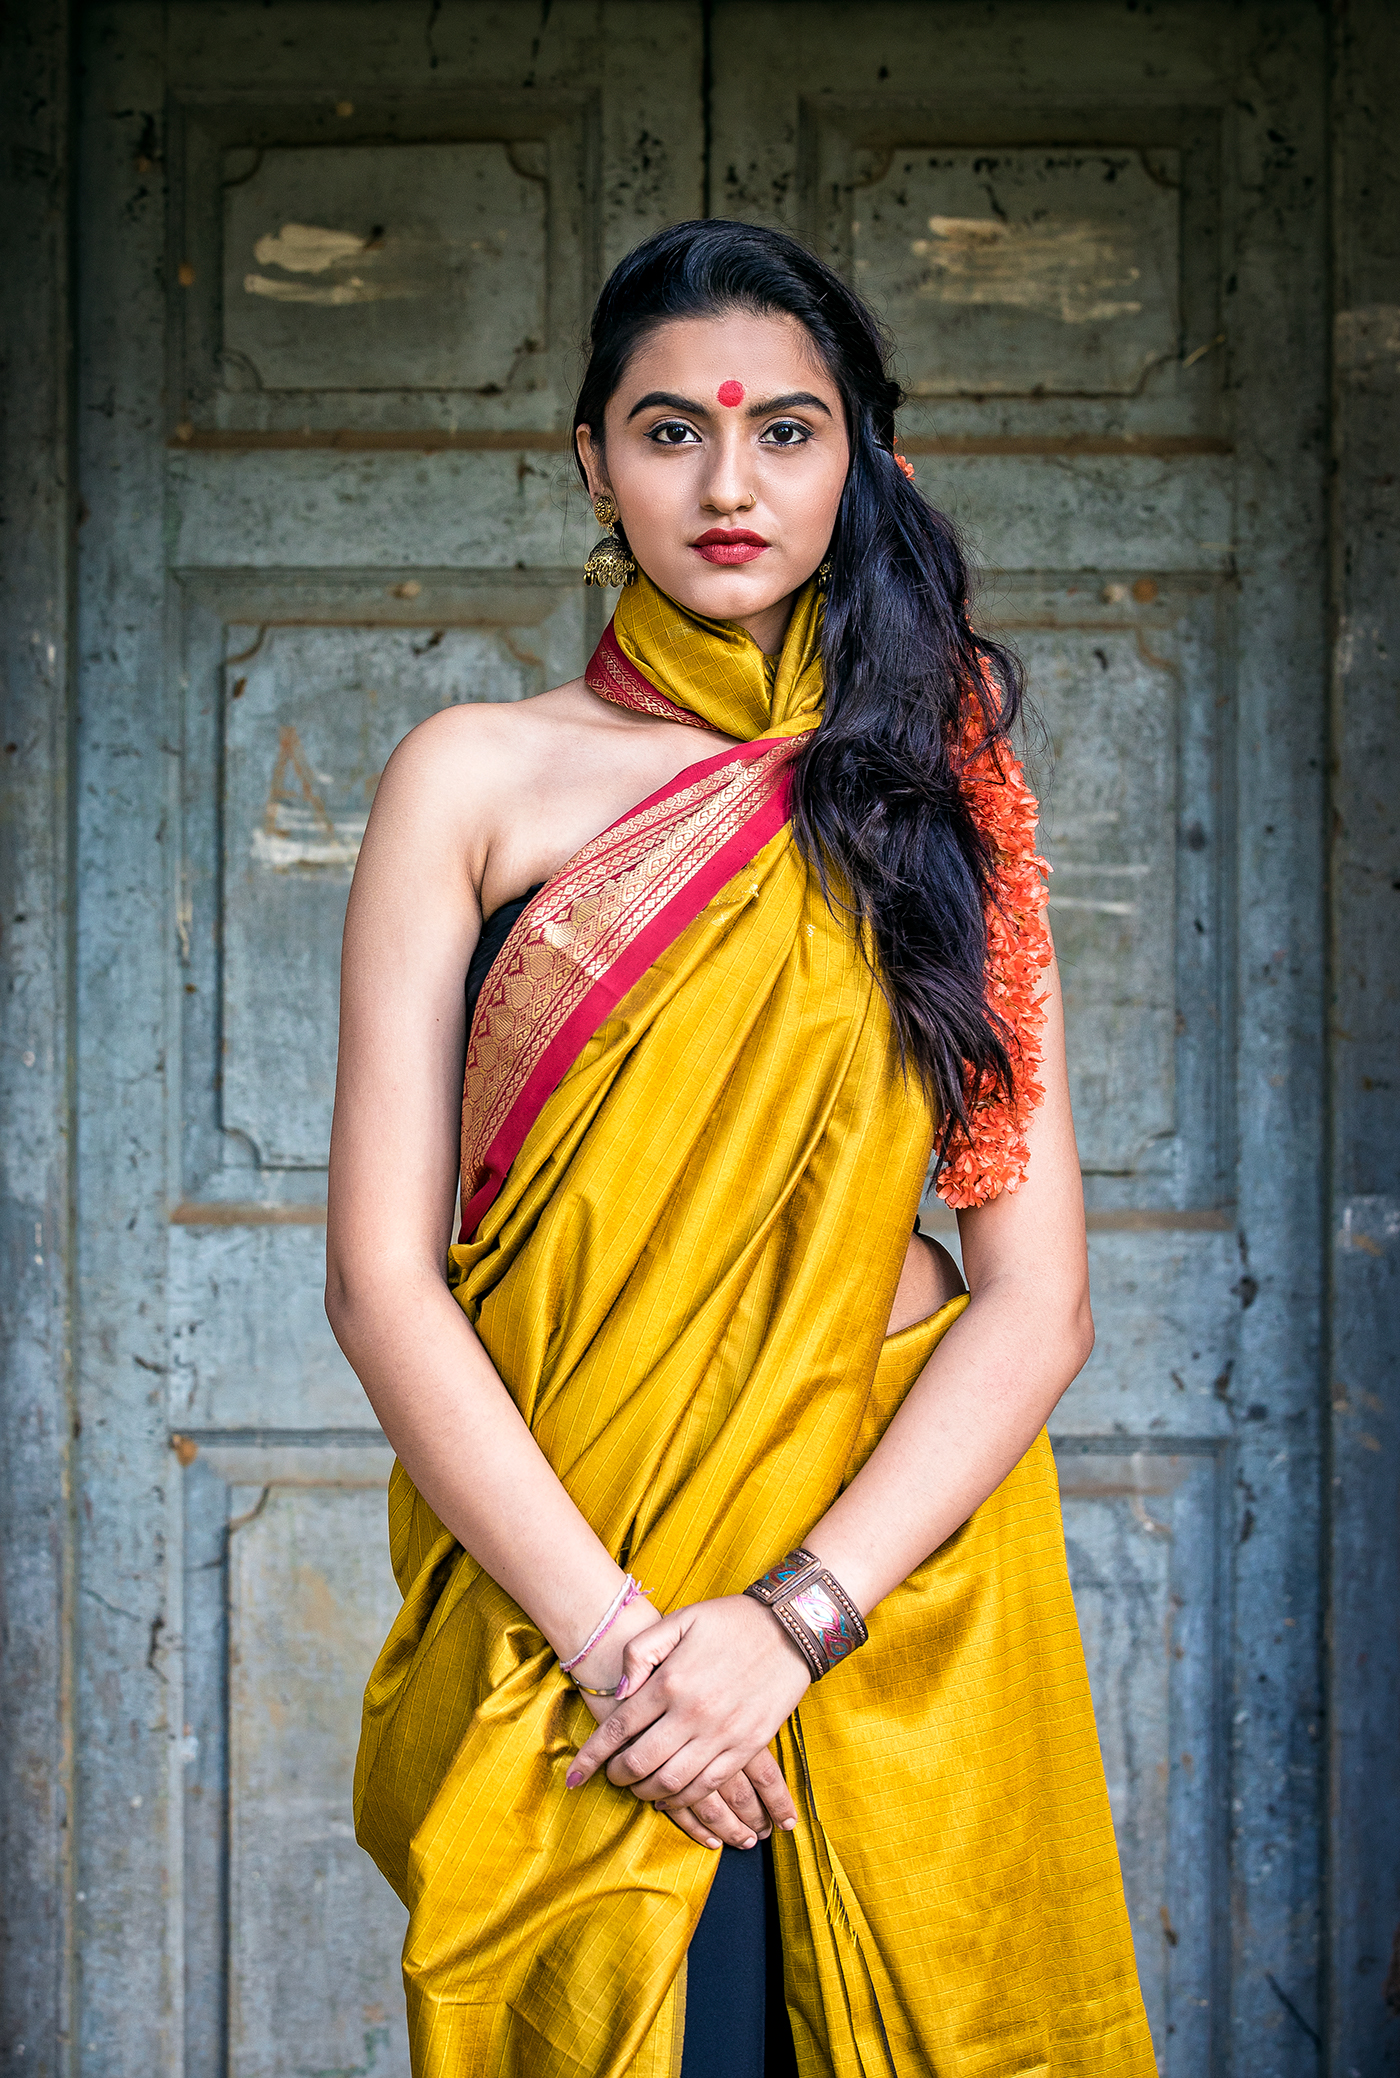 Fashionphotographer IndianModel indianphotographer streetphotography traditionalshoot saree bangalorefashionphotographer